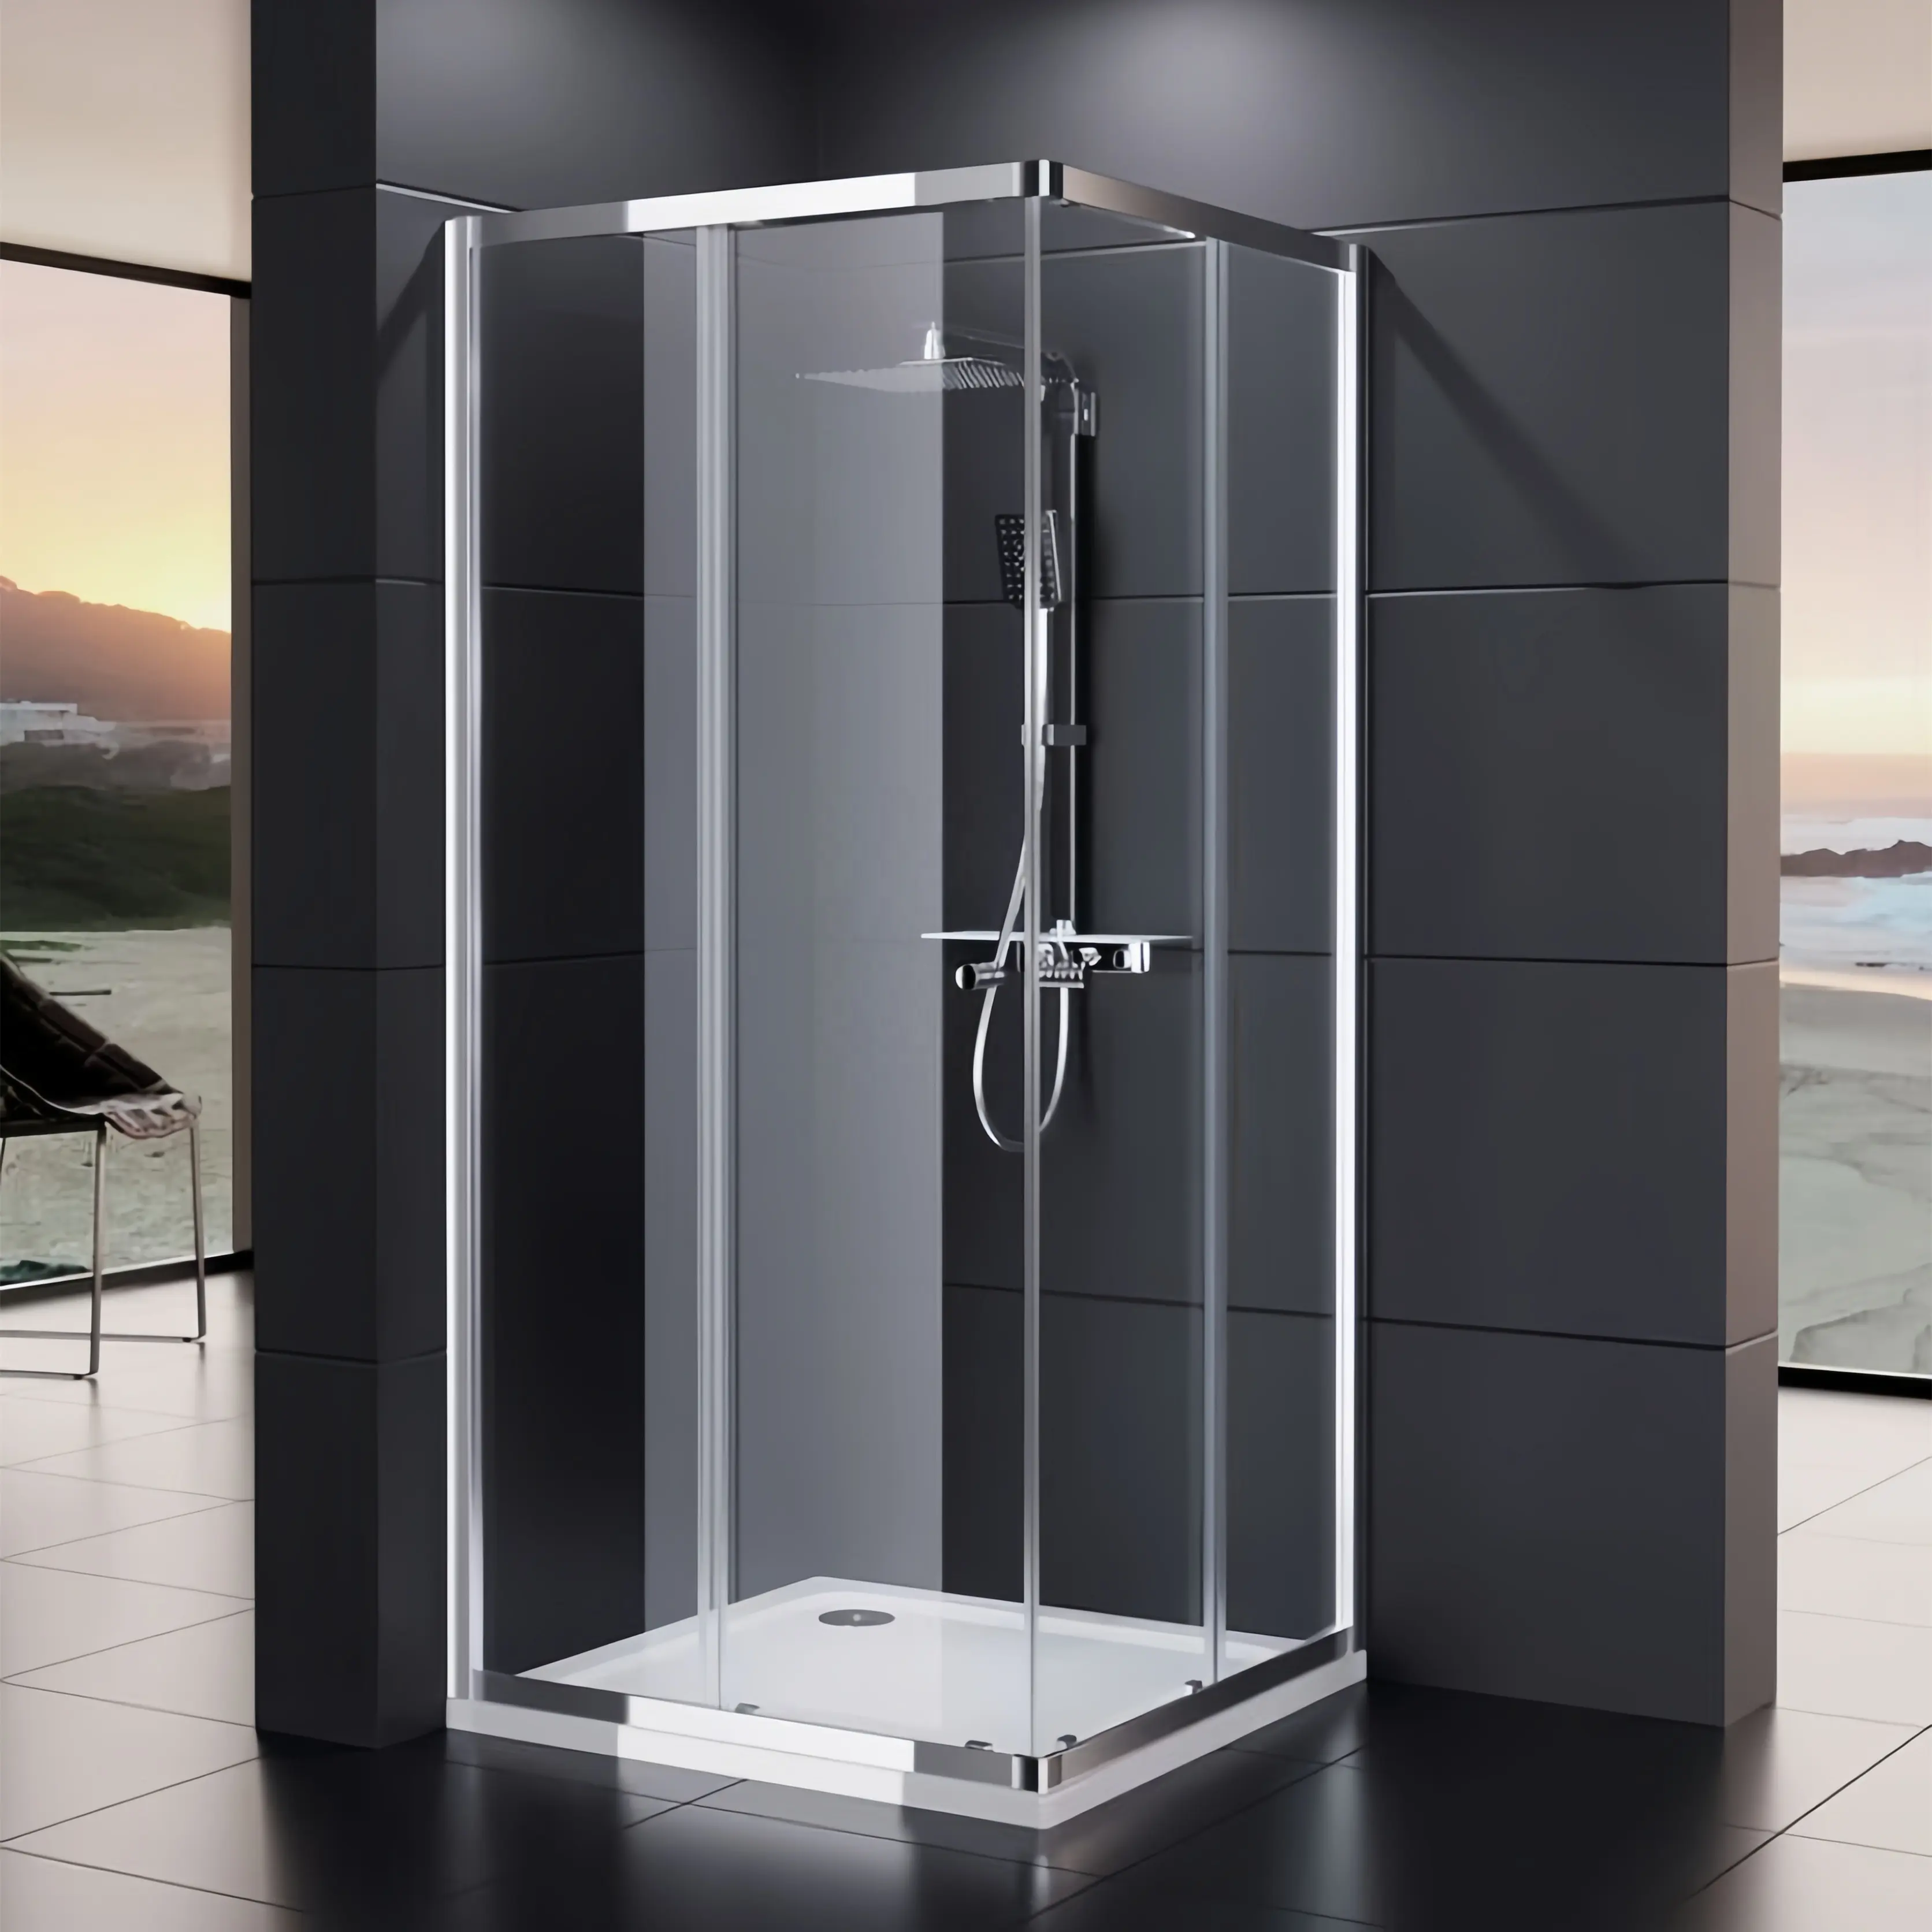 Oumeiga turquie salle de bain 750x750 cabine de douche à base d'angle double porte coulissante